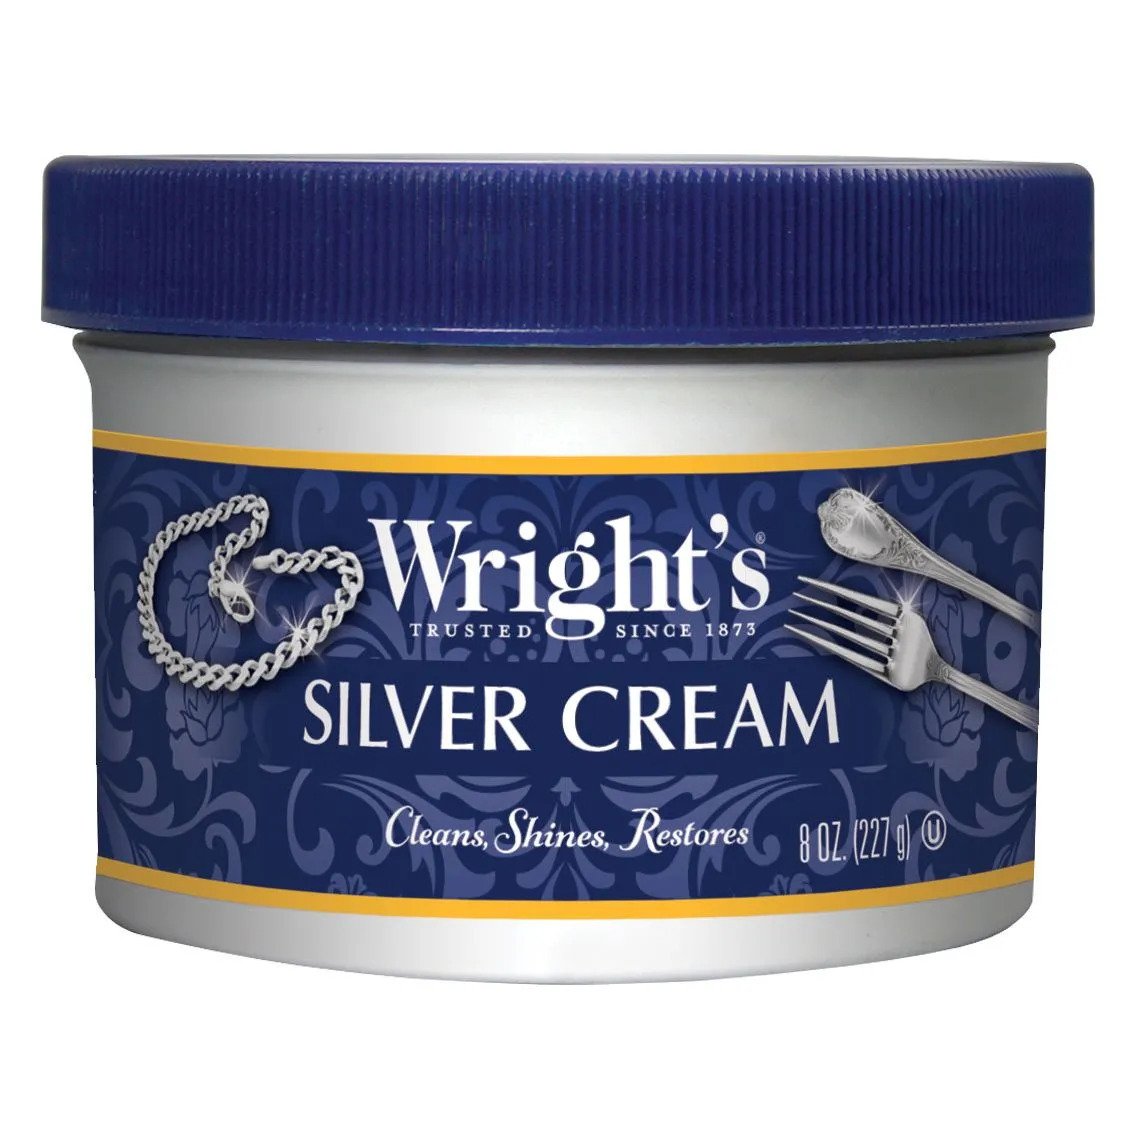 Wright's Silver Cream - 8oz (227g)